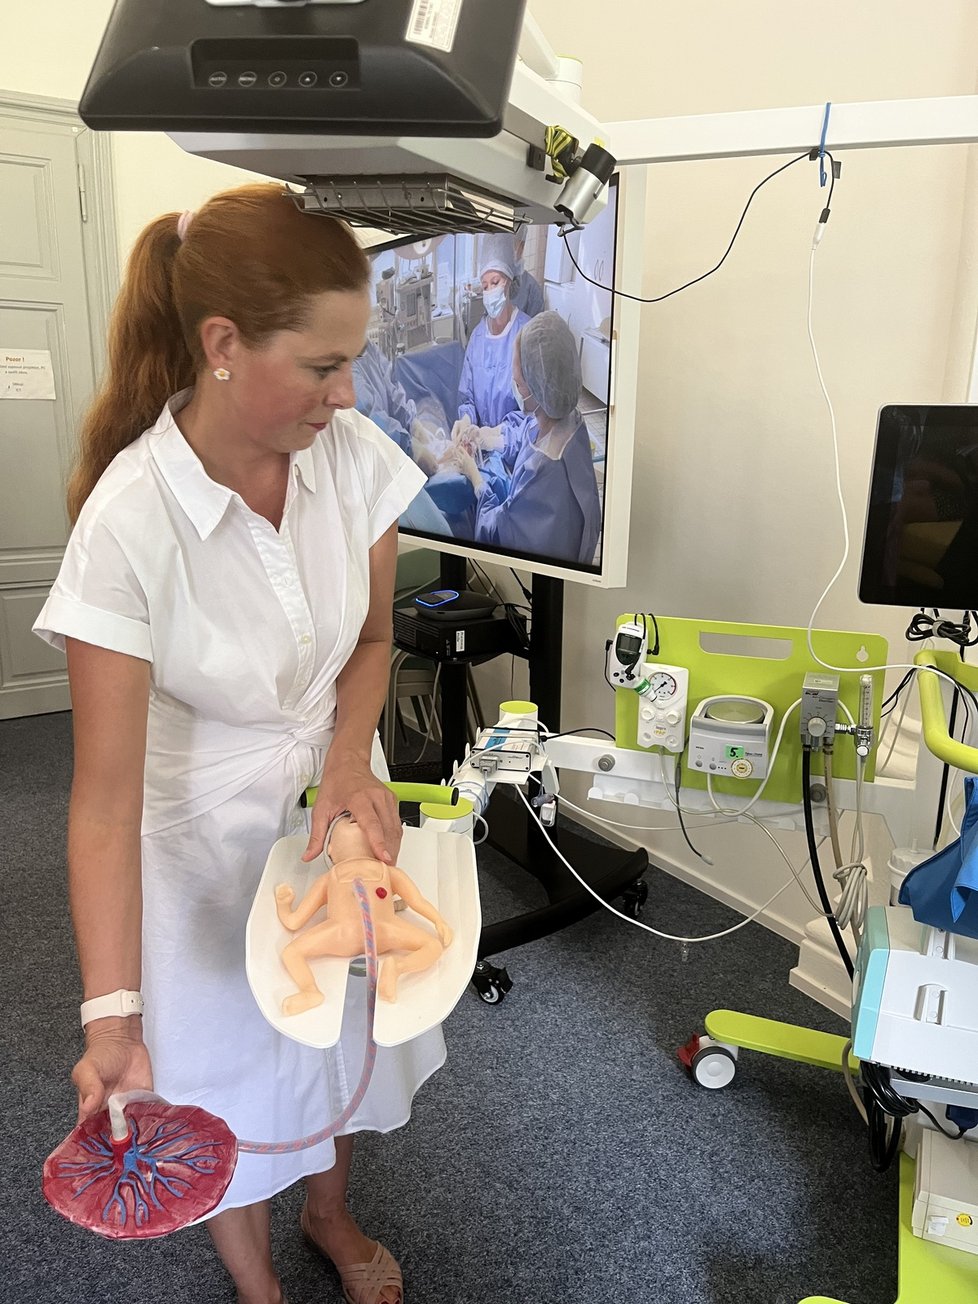 MUDr. Tereza Lamberská ukazuje speciální resuscitační lůžko, které pomáhá s péči o předčasně narozené děti